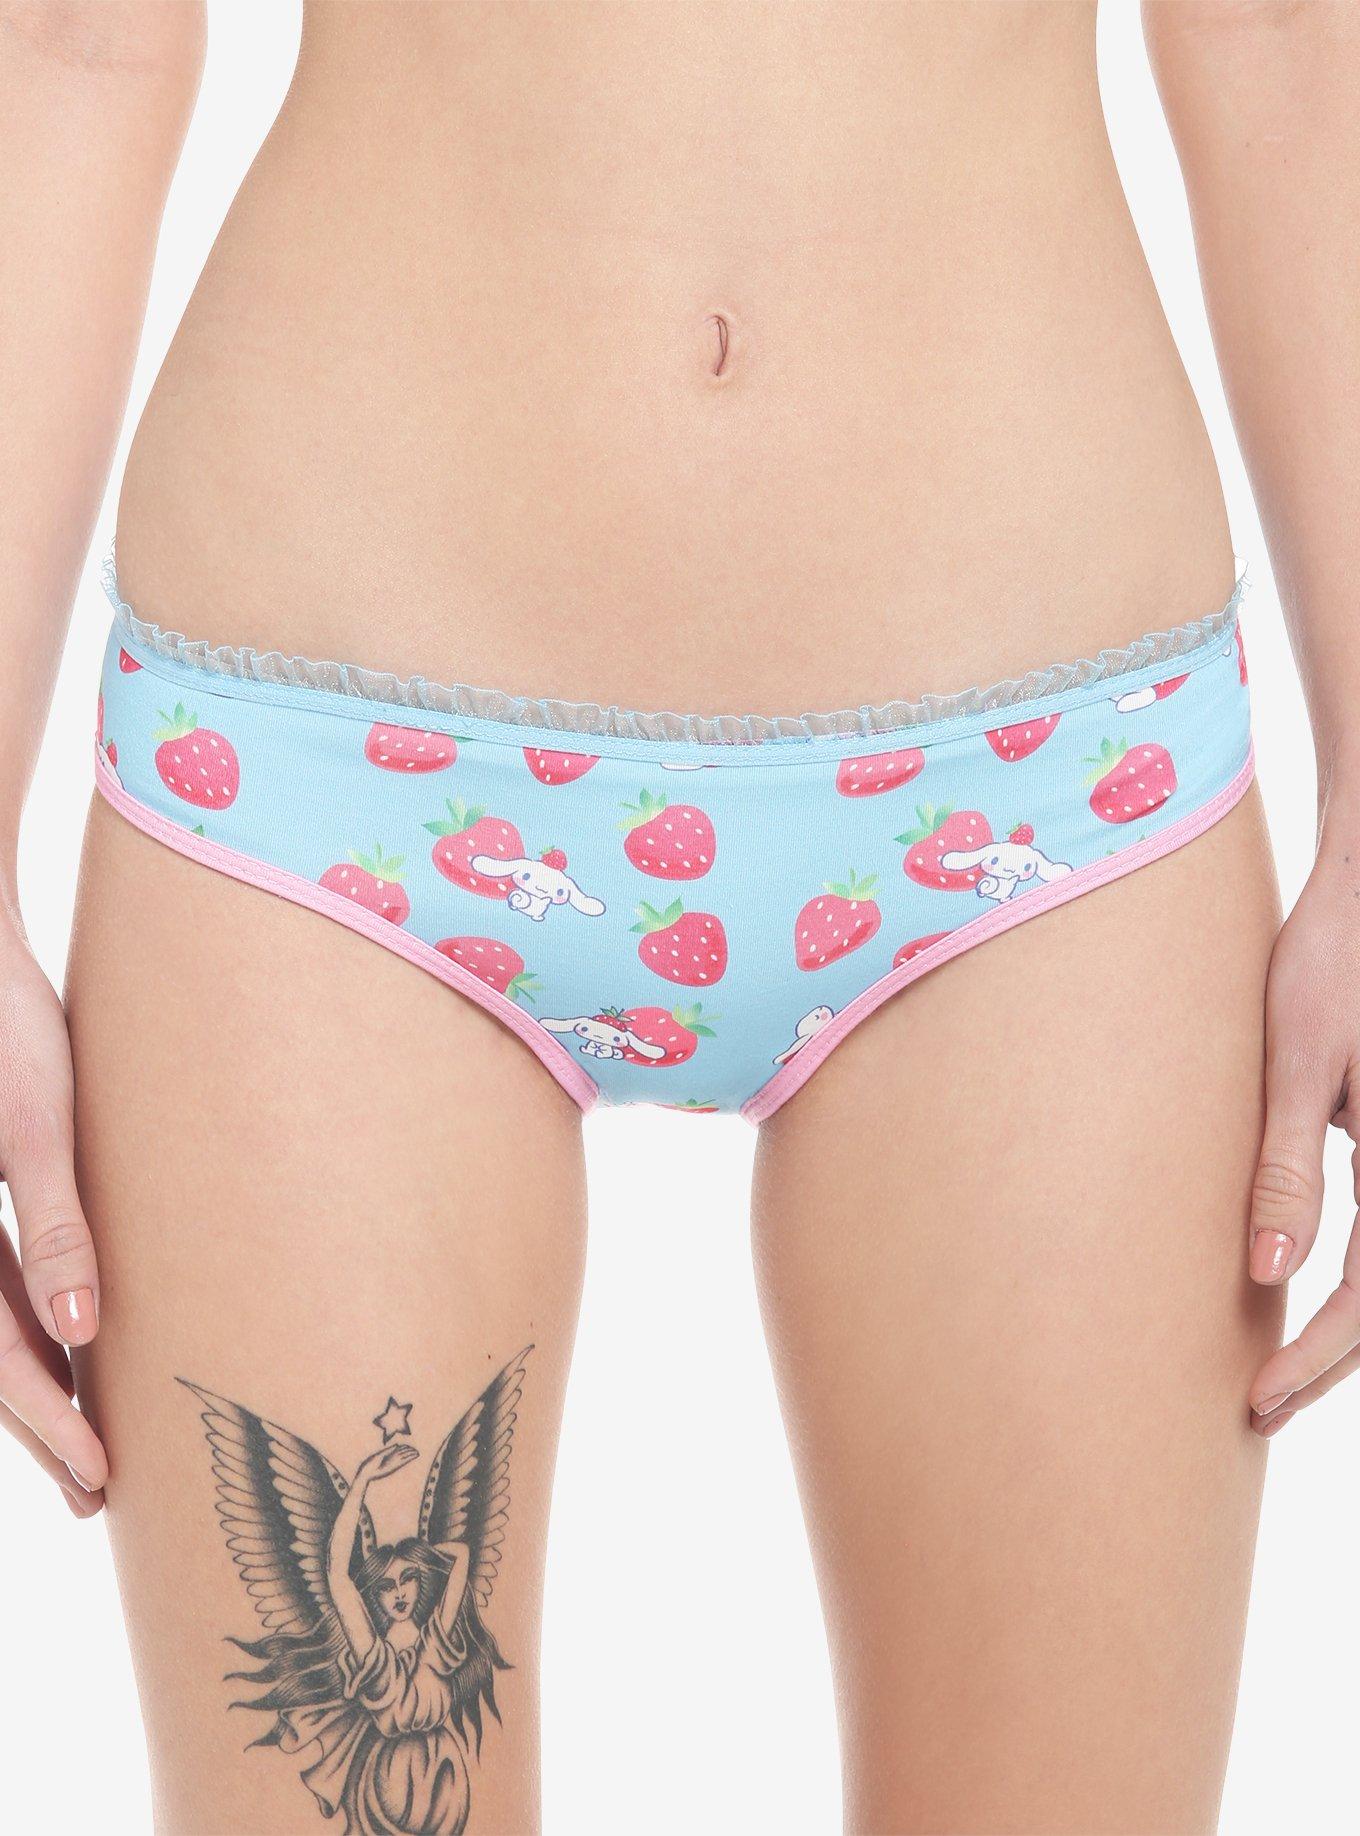 Plus Size Lingerie for Women Cute Girl Fun Underwear Strawberry